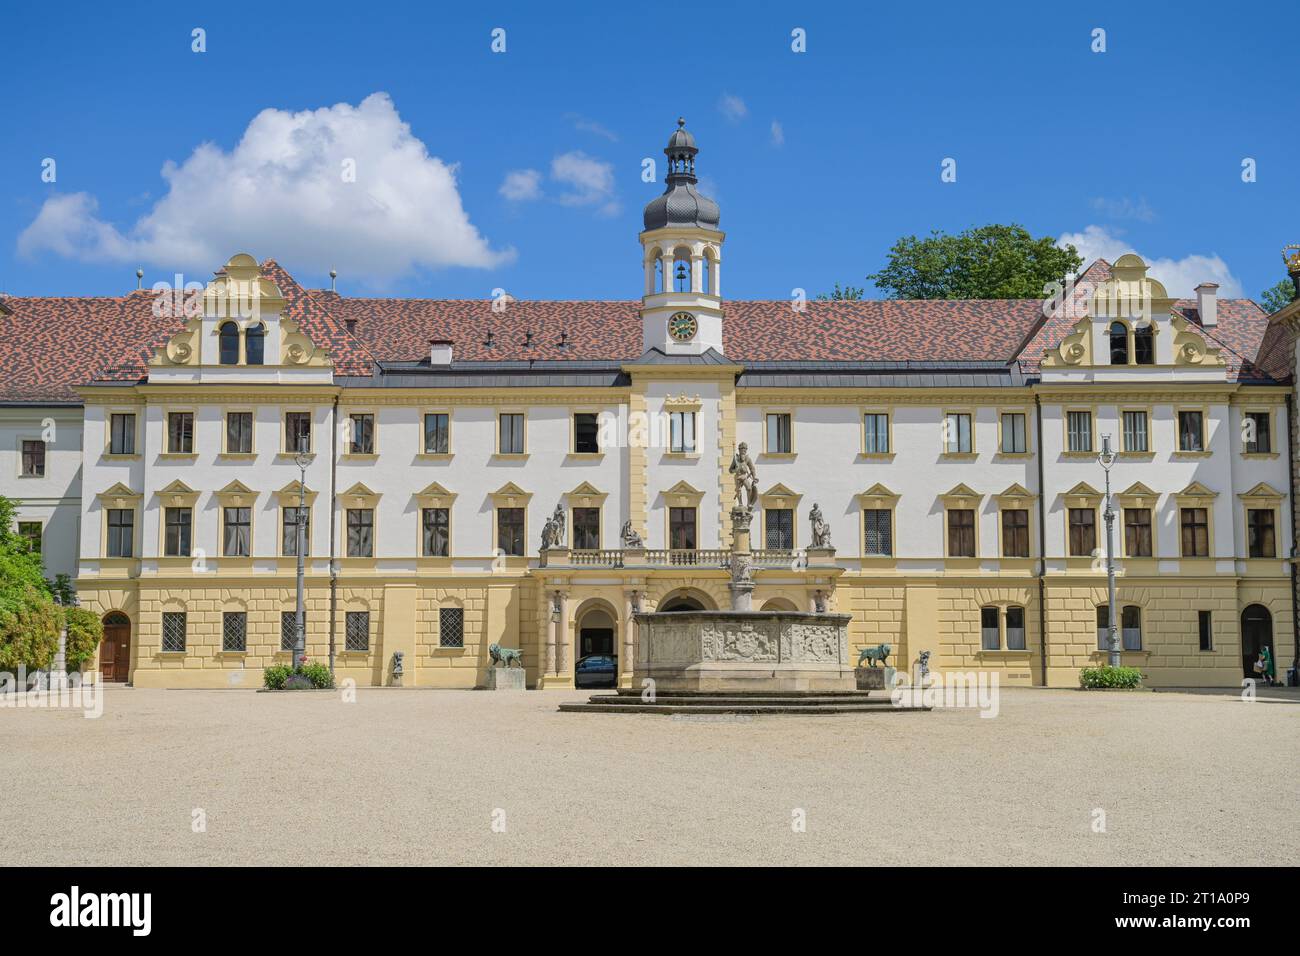 Innenhof, Schloss St Emmeram, Thurn und Taxis, Regensburg, Bayern, Deutschland Foto Stock